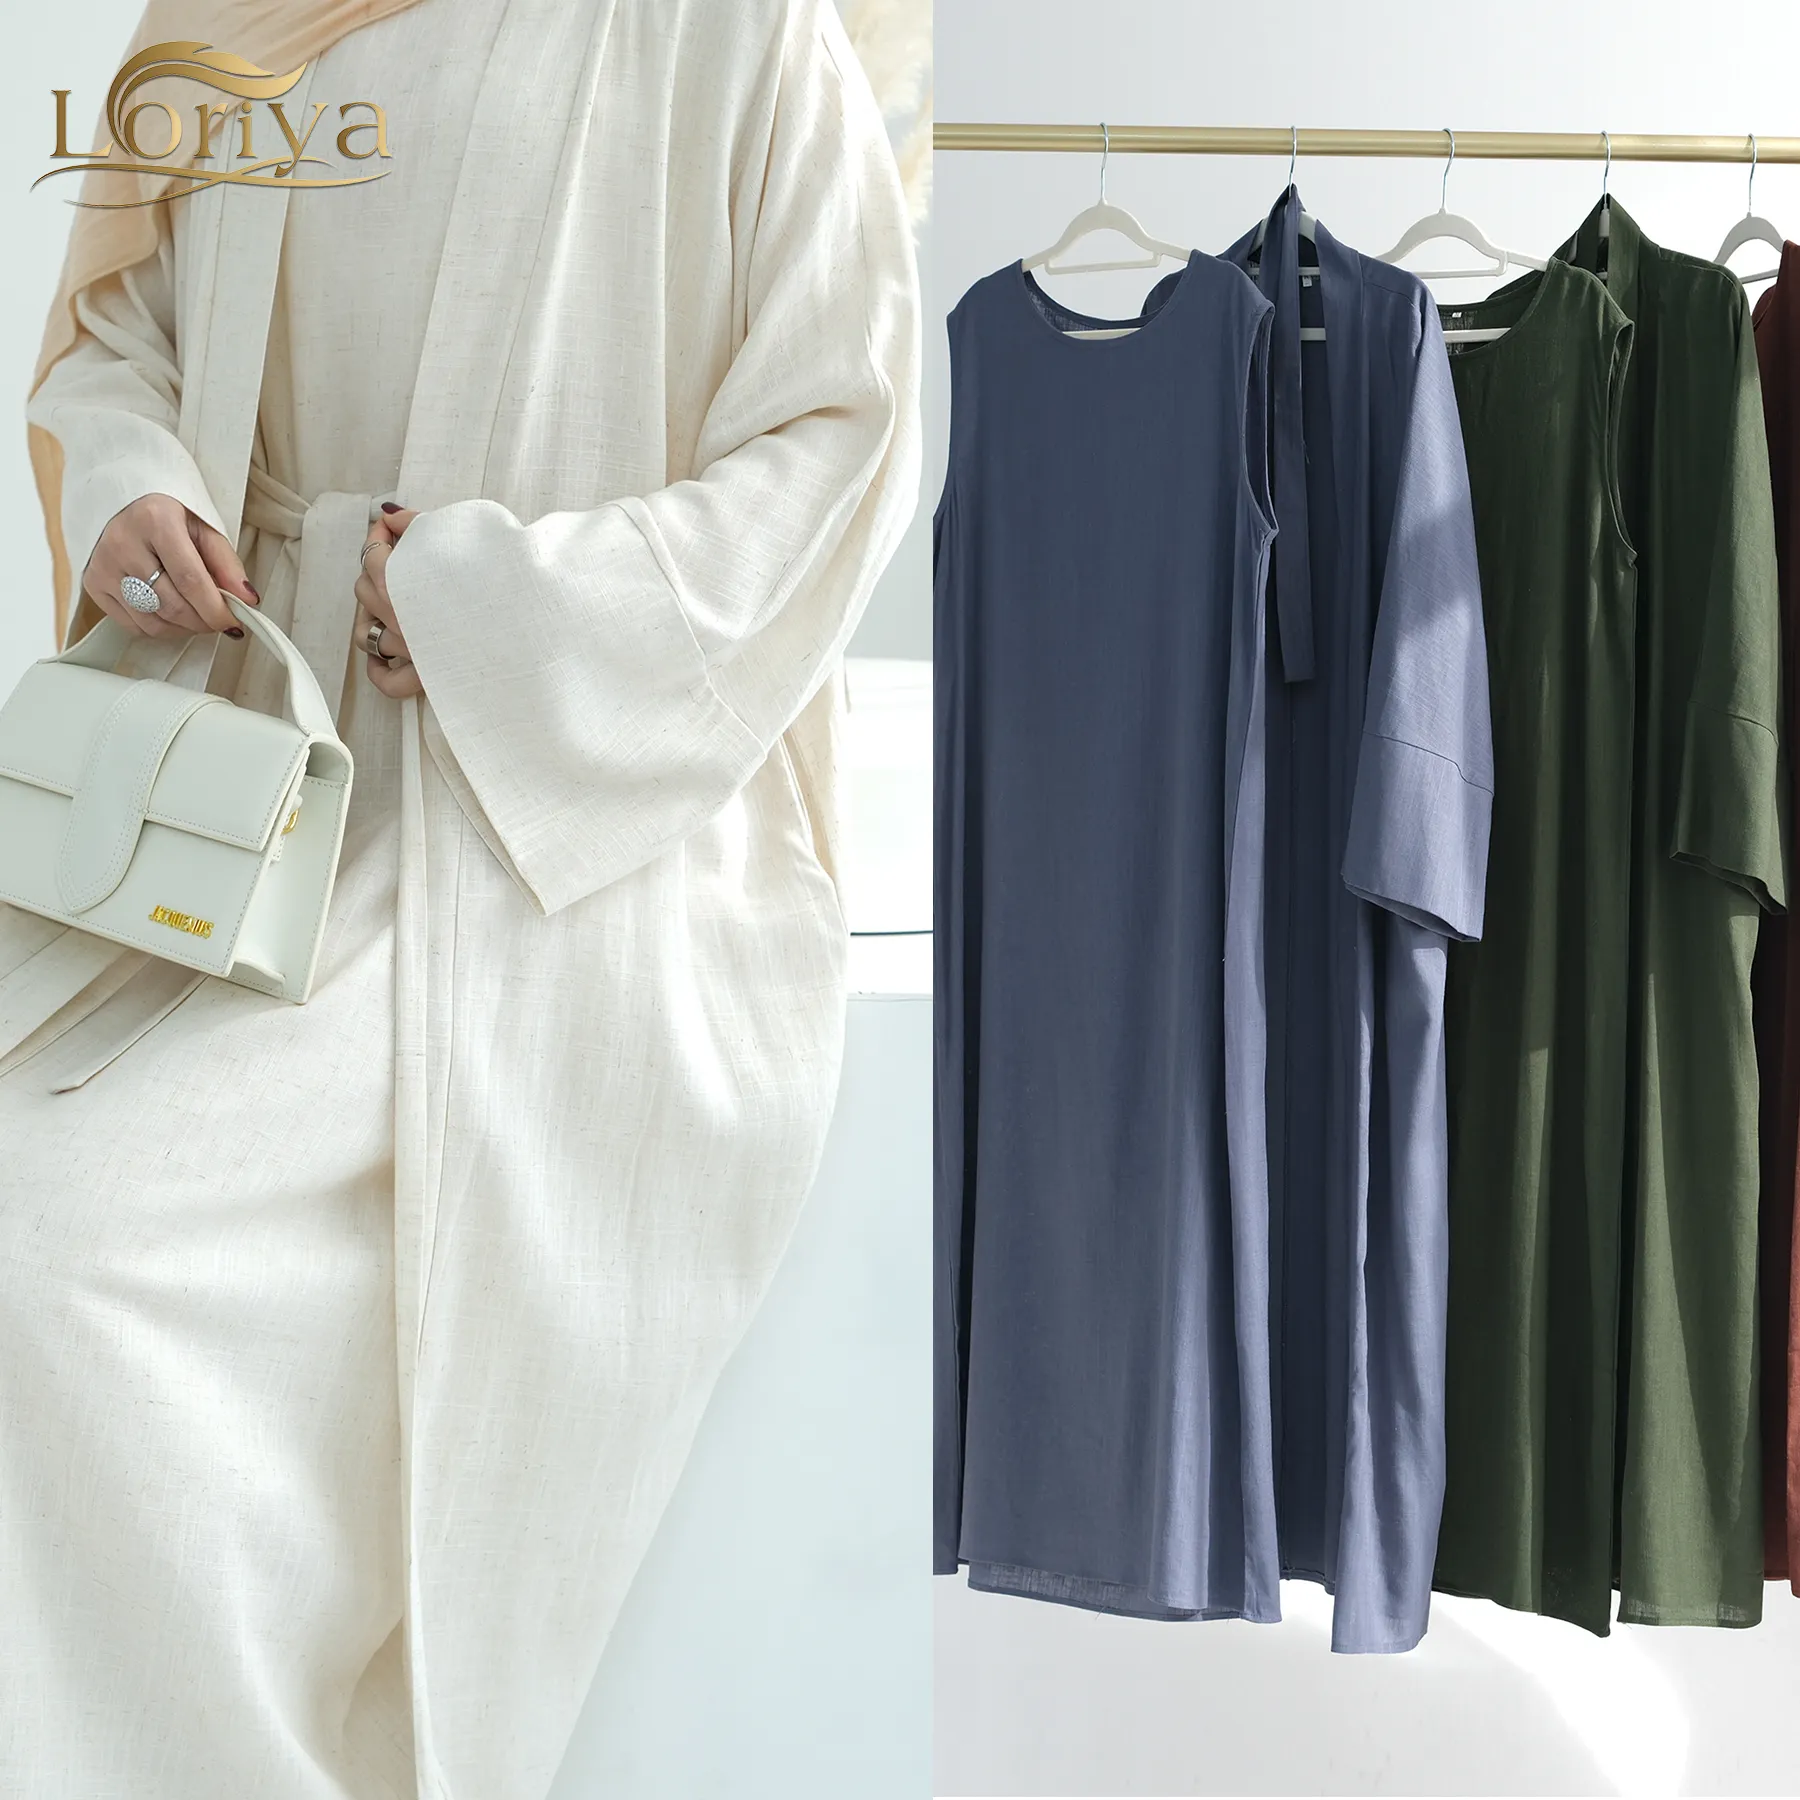 Loriya Abaya Neue islamische Kleidung Bescheidene Premium Leinen 2 Stück Abaya Set Abaya Frauen Muslim Kleid Türkei Eid Kollektionen